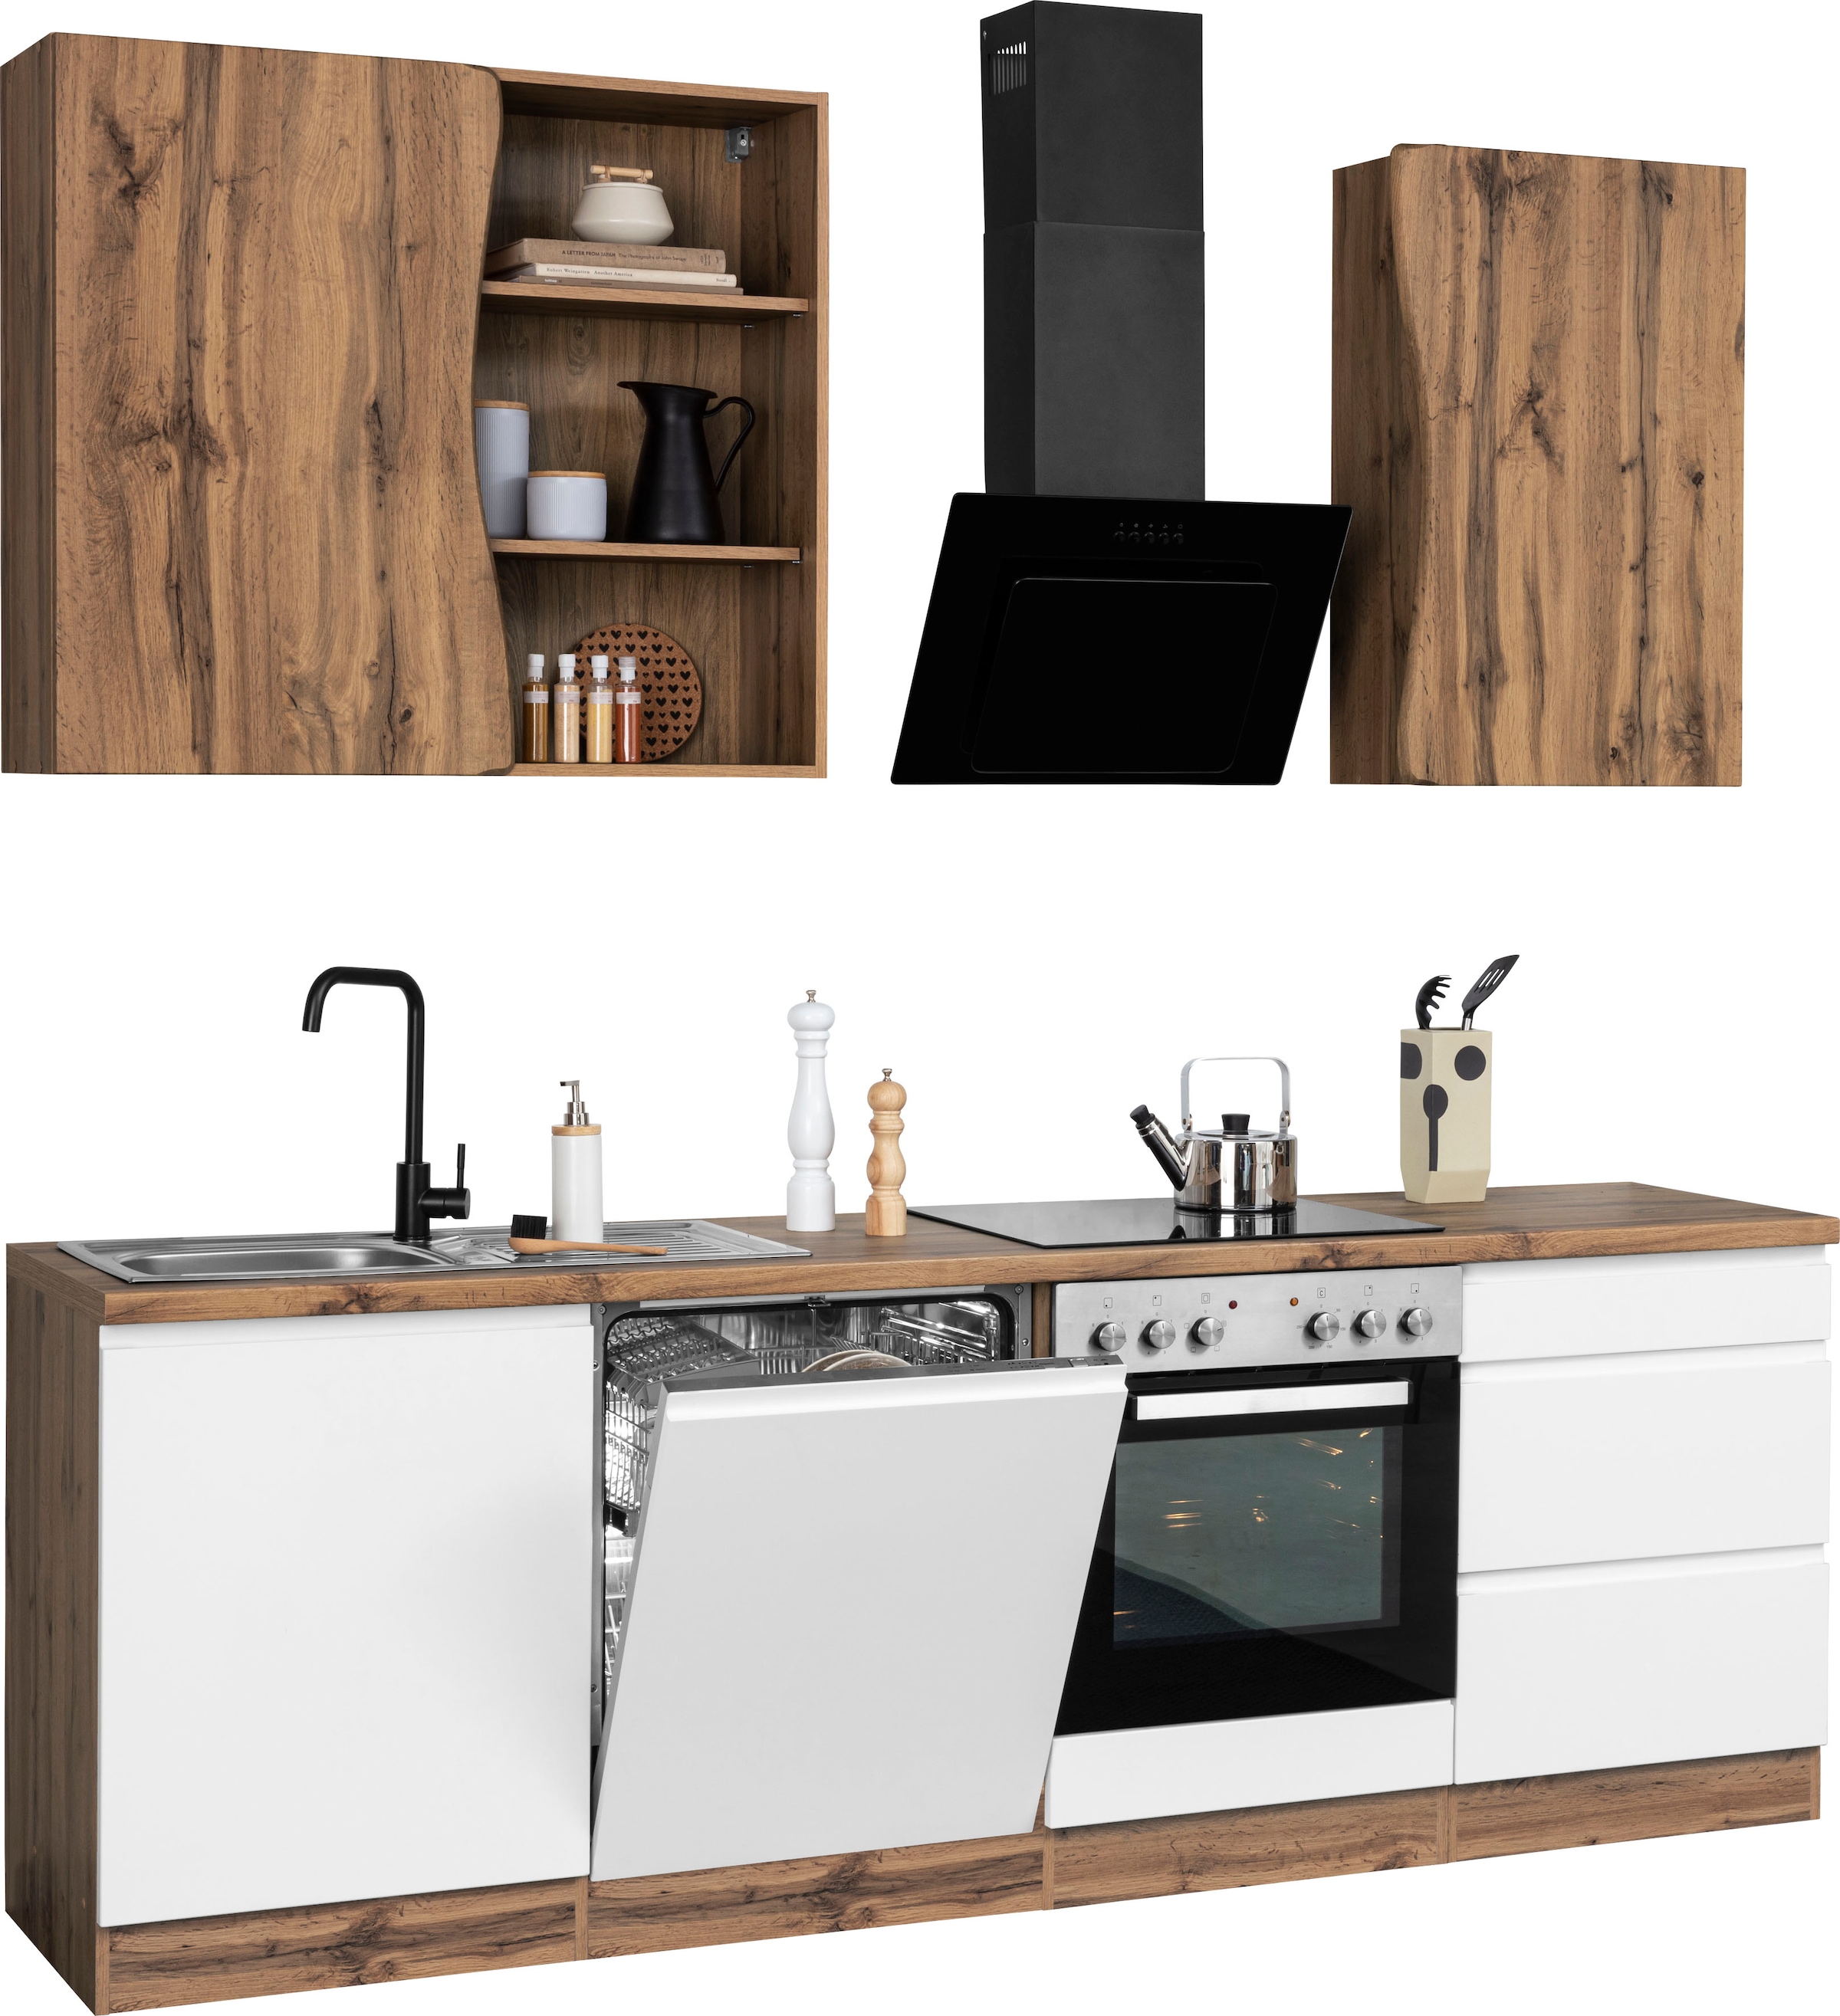 HELD MÖBEL Küche »Bruneck«, 240cm breit, hochwertige ohne E-Geräte, | BAUR bestellen oder MDF-Fronten mit wahlweise